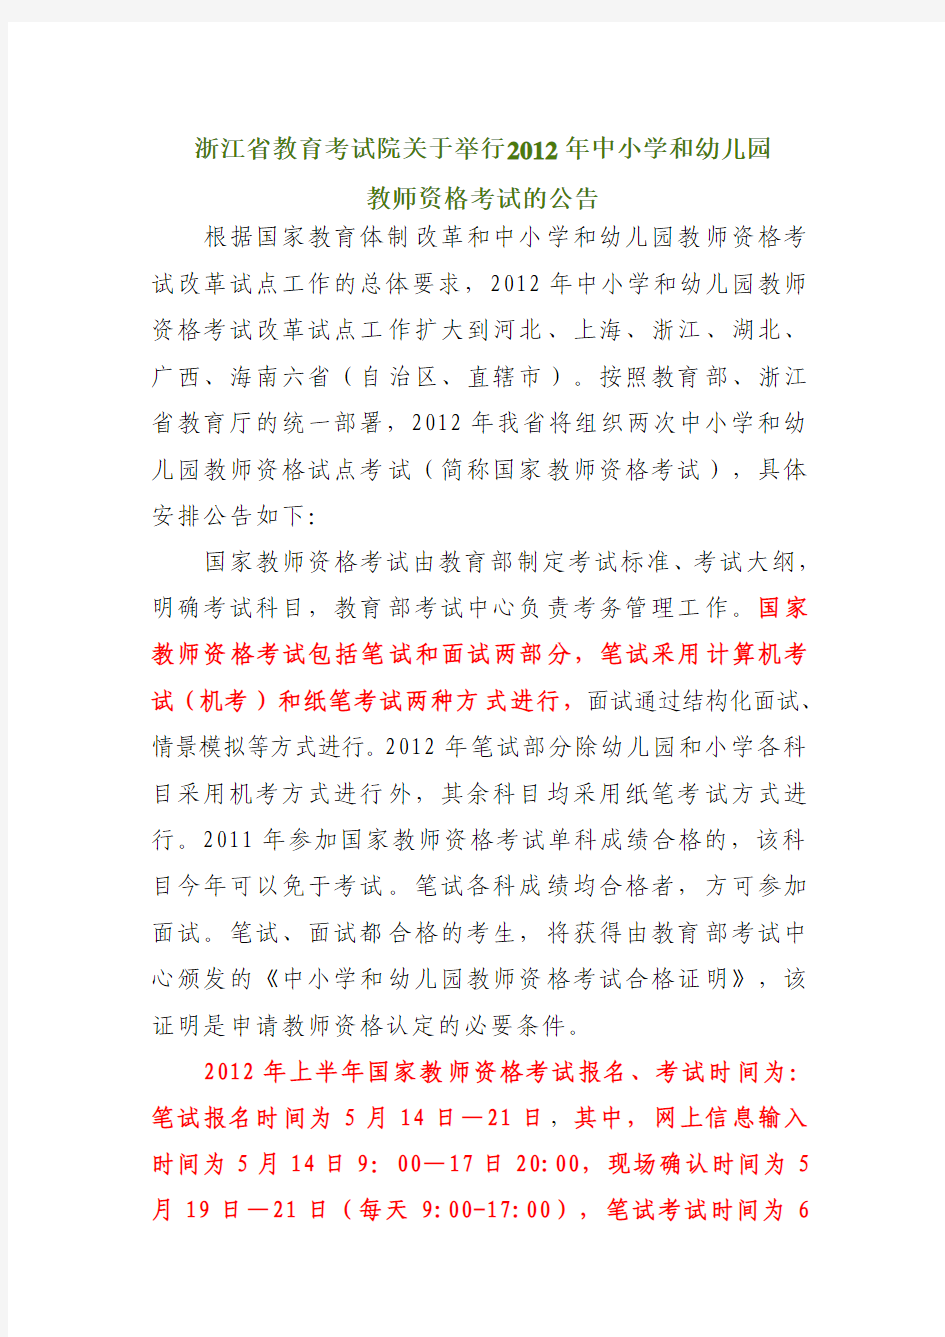 浙江省教育考试院关于举行2012年中小学和幼儿园教师资格考试的公告